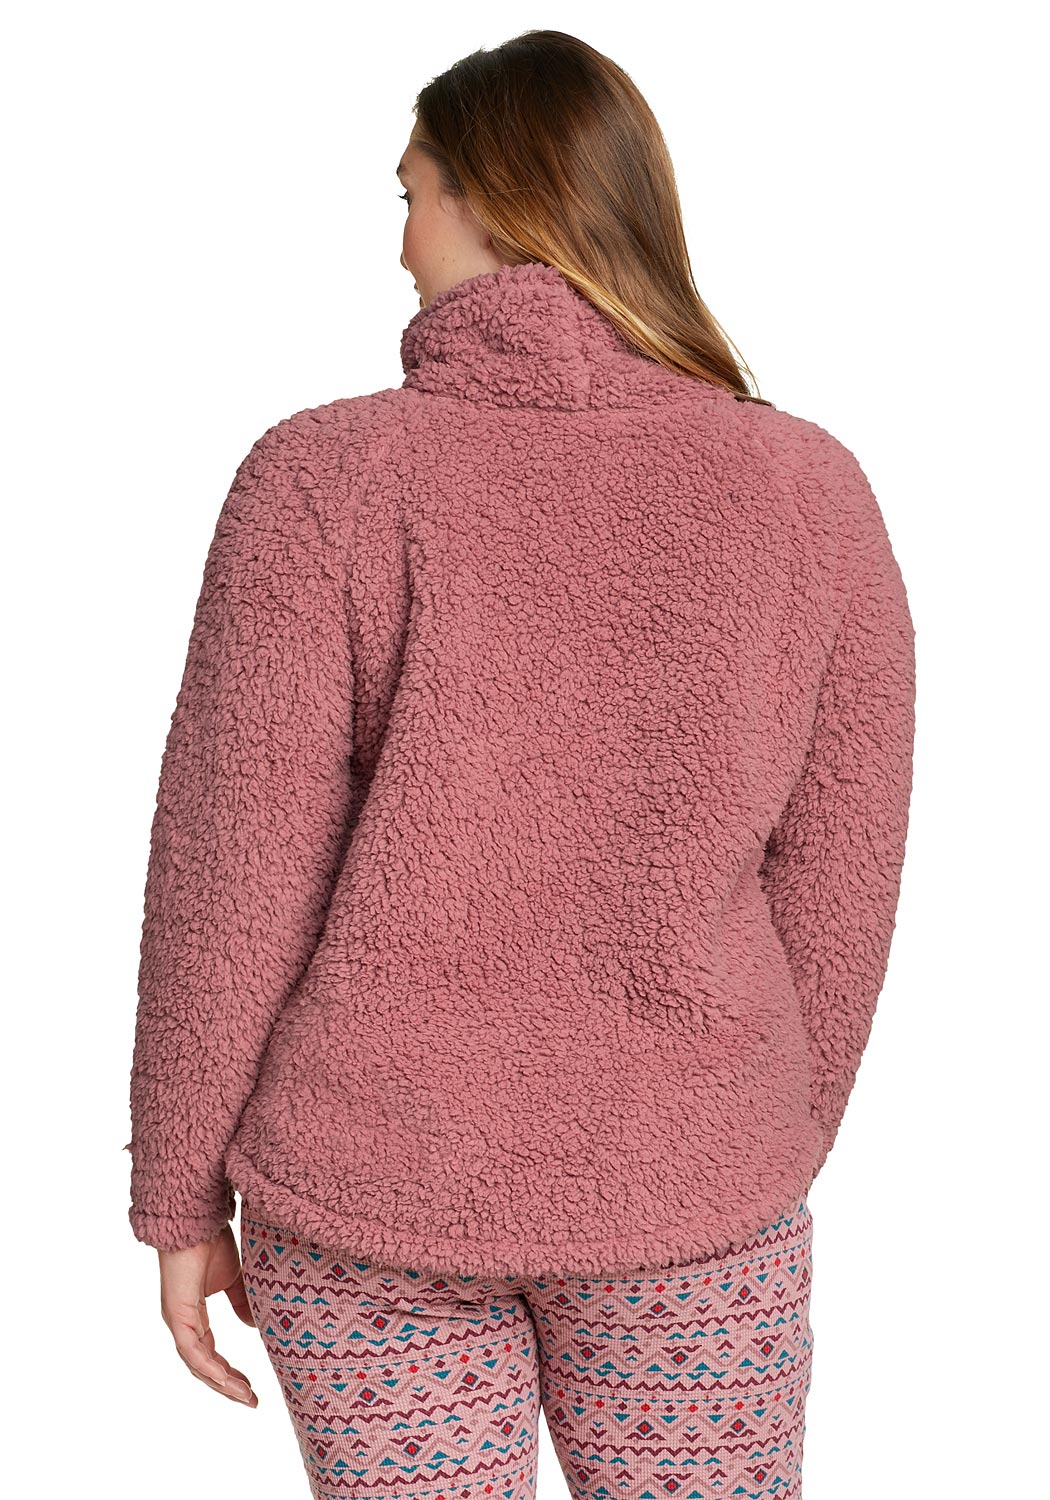 Artikel klicken und genauer betrachten! - Fireside Rollkragen Sweatshirt Damen Violett Gr. XS Unser Pullover aus weichem, plüschigen Polyesterfleece hält dank Rollkragen besonders warm. | im Online Shop kaufen